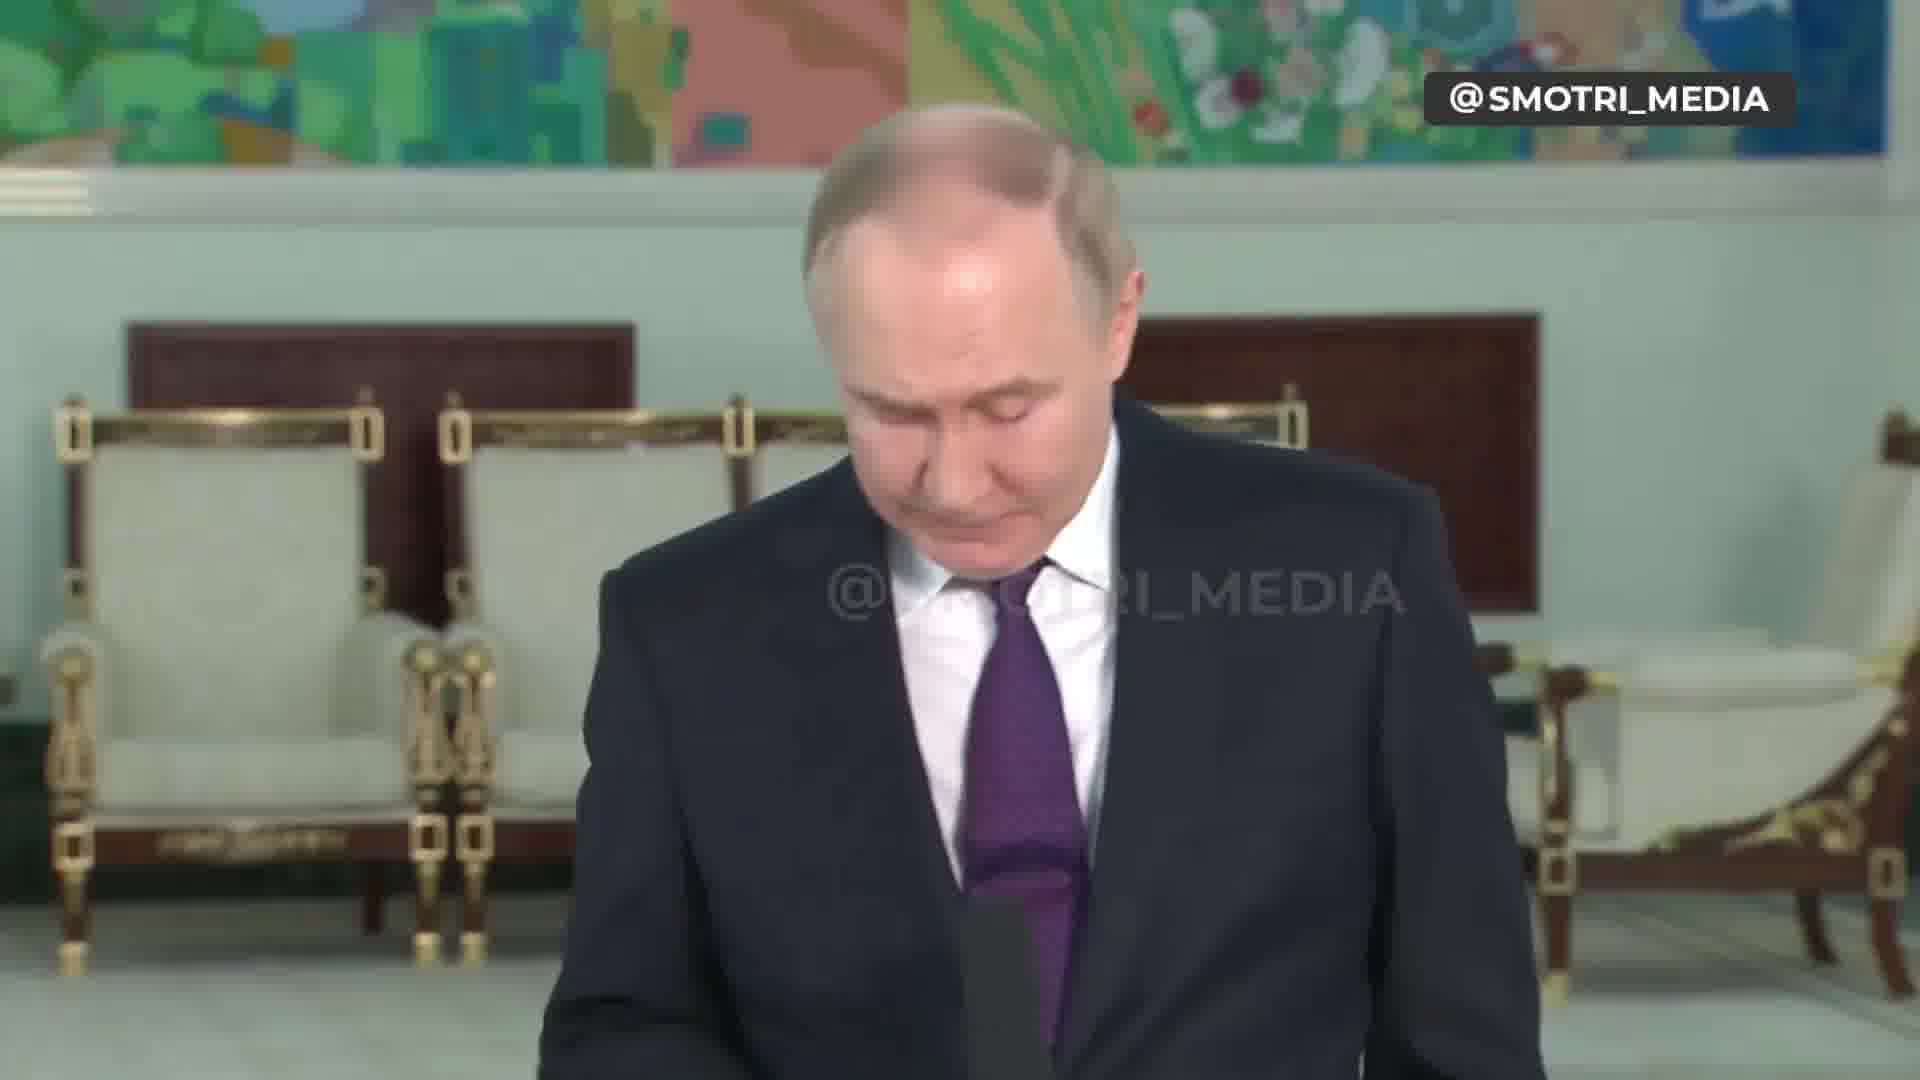 Putin: Ukrainan Verkhovna Rada on legitiimi ja Verkhovna Radan puhemiehen tulisi olla virkaatekevä presidentti